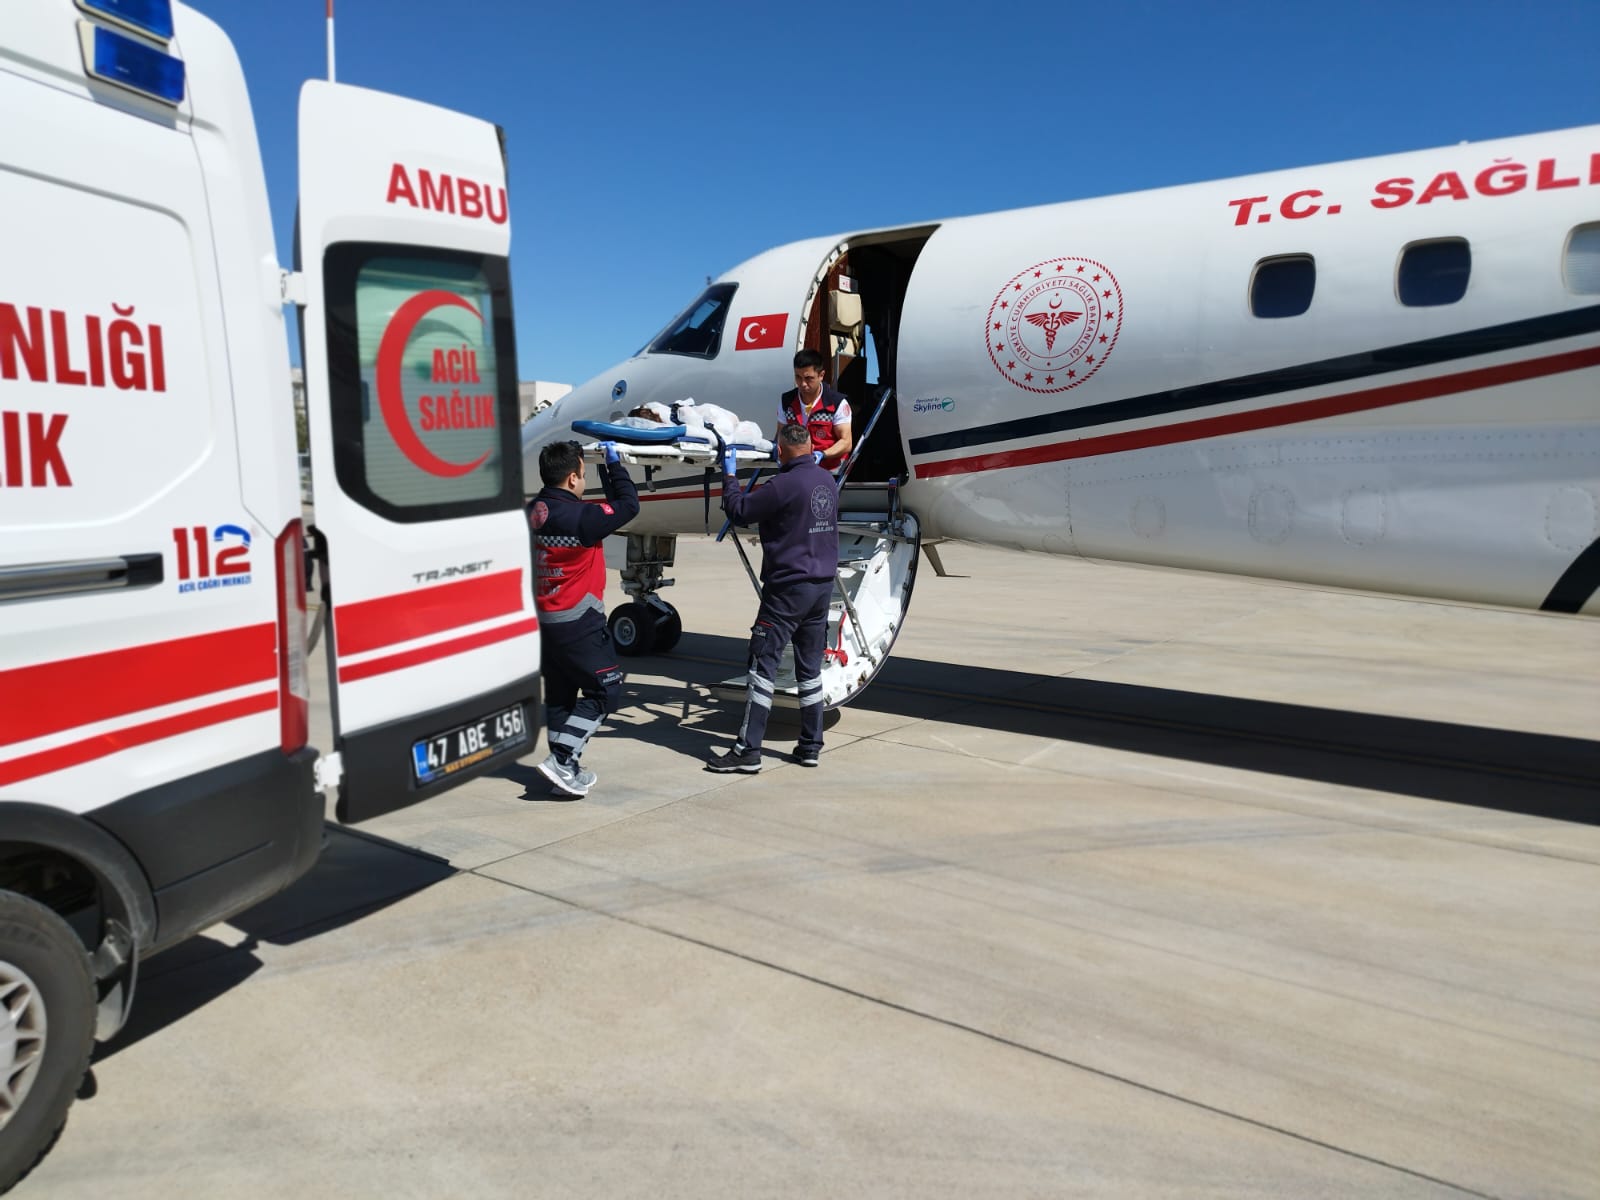 Ambulans uçak, Seyhan bebek için havalandı